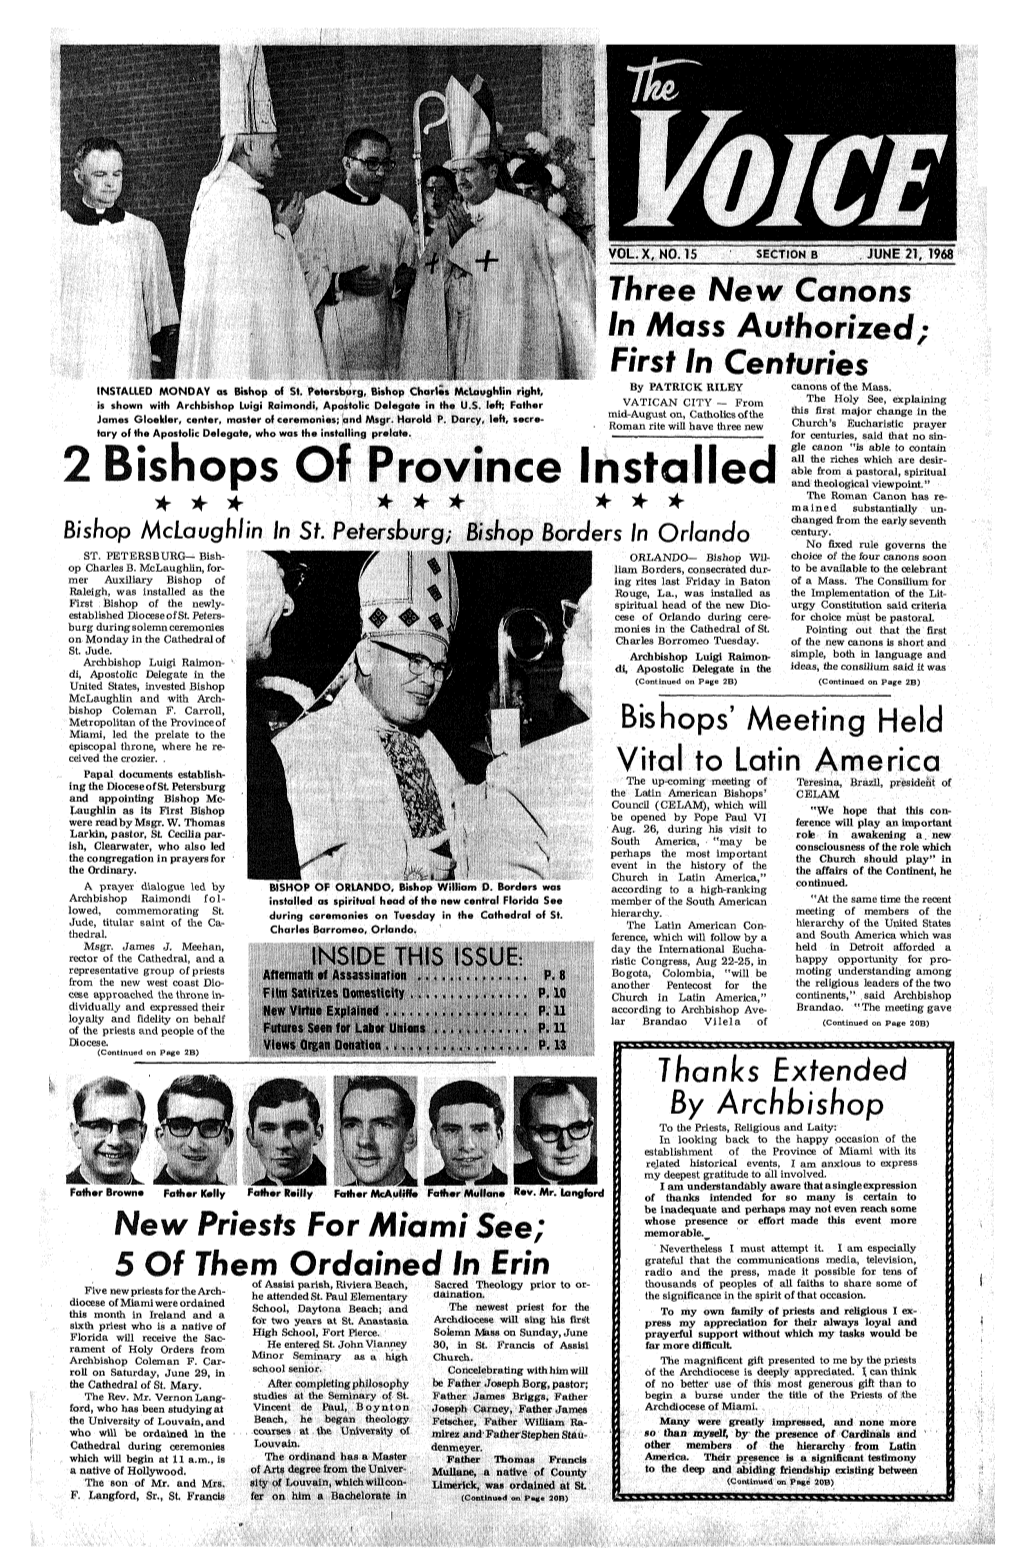 2 Bishops of Province Installed * * * * * * * * &gt;